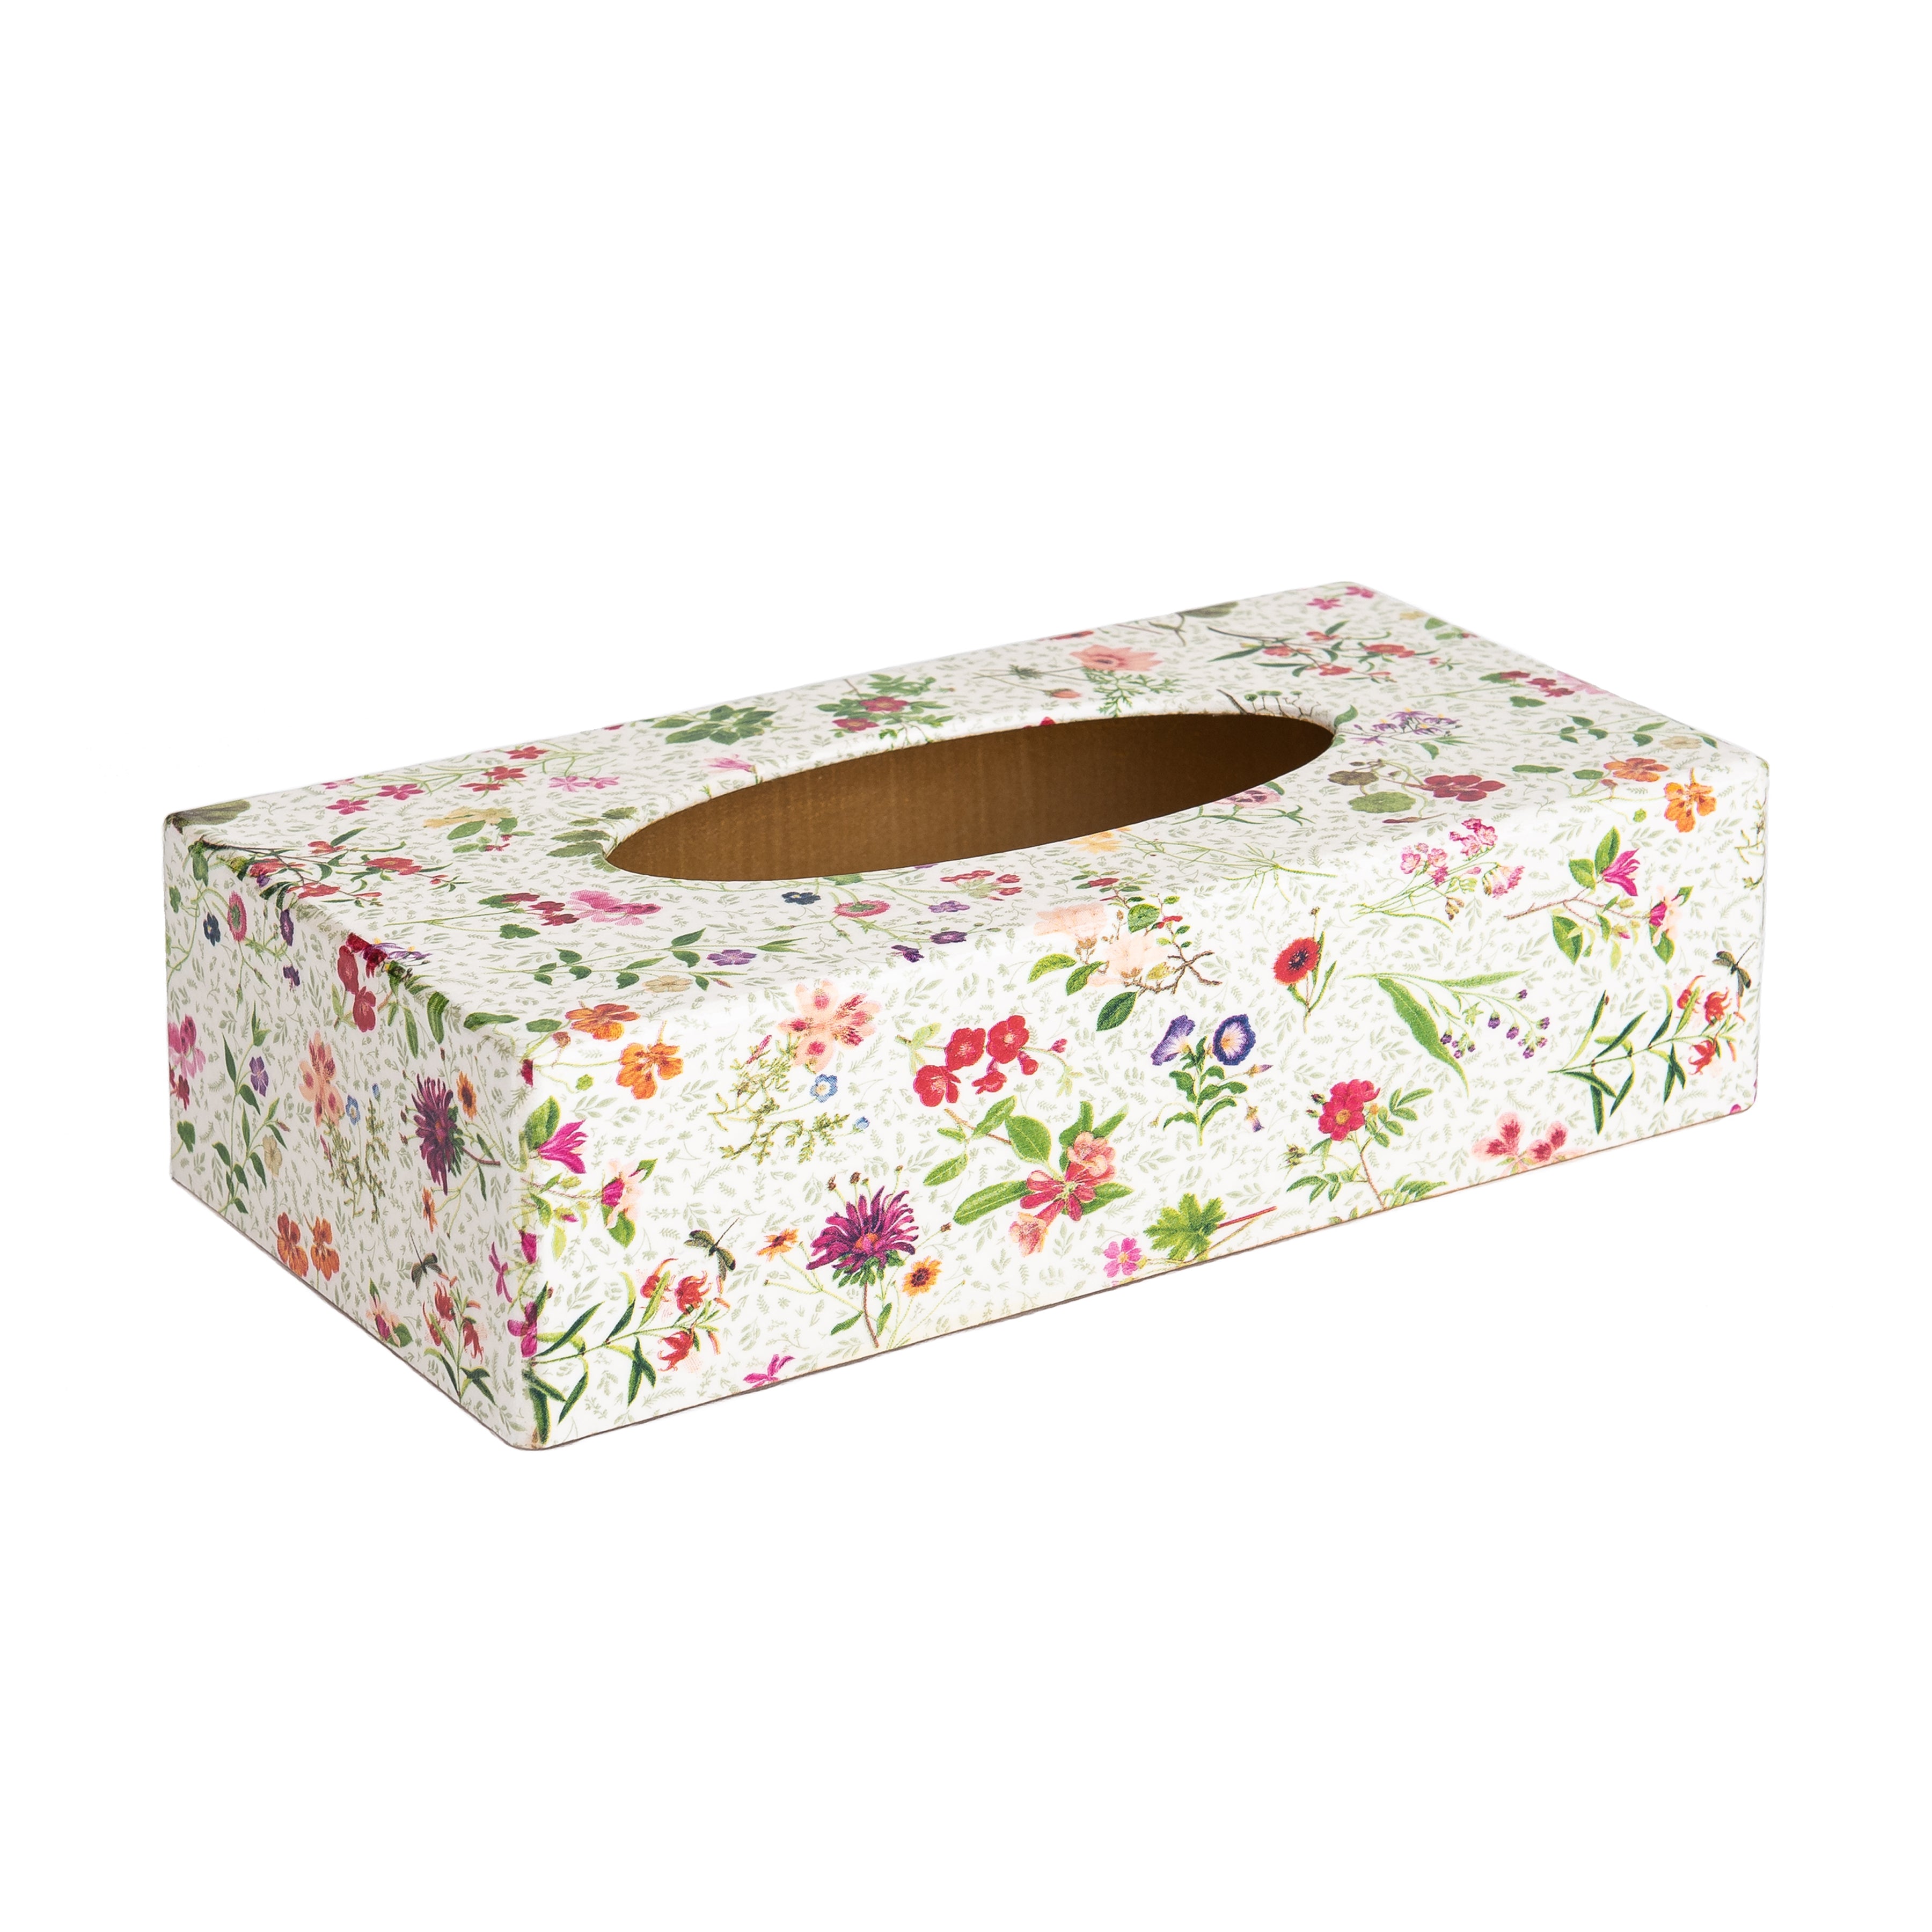 English Garden rectangular tissue box cover